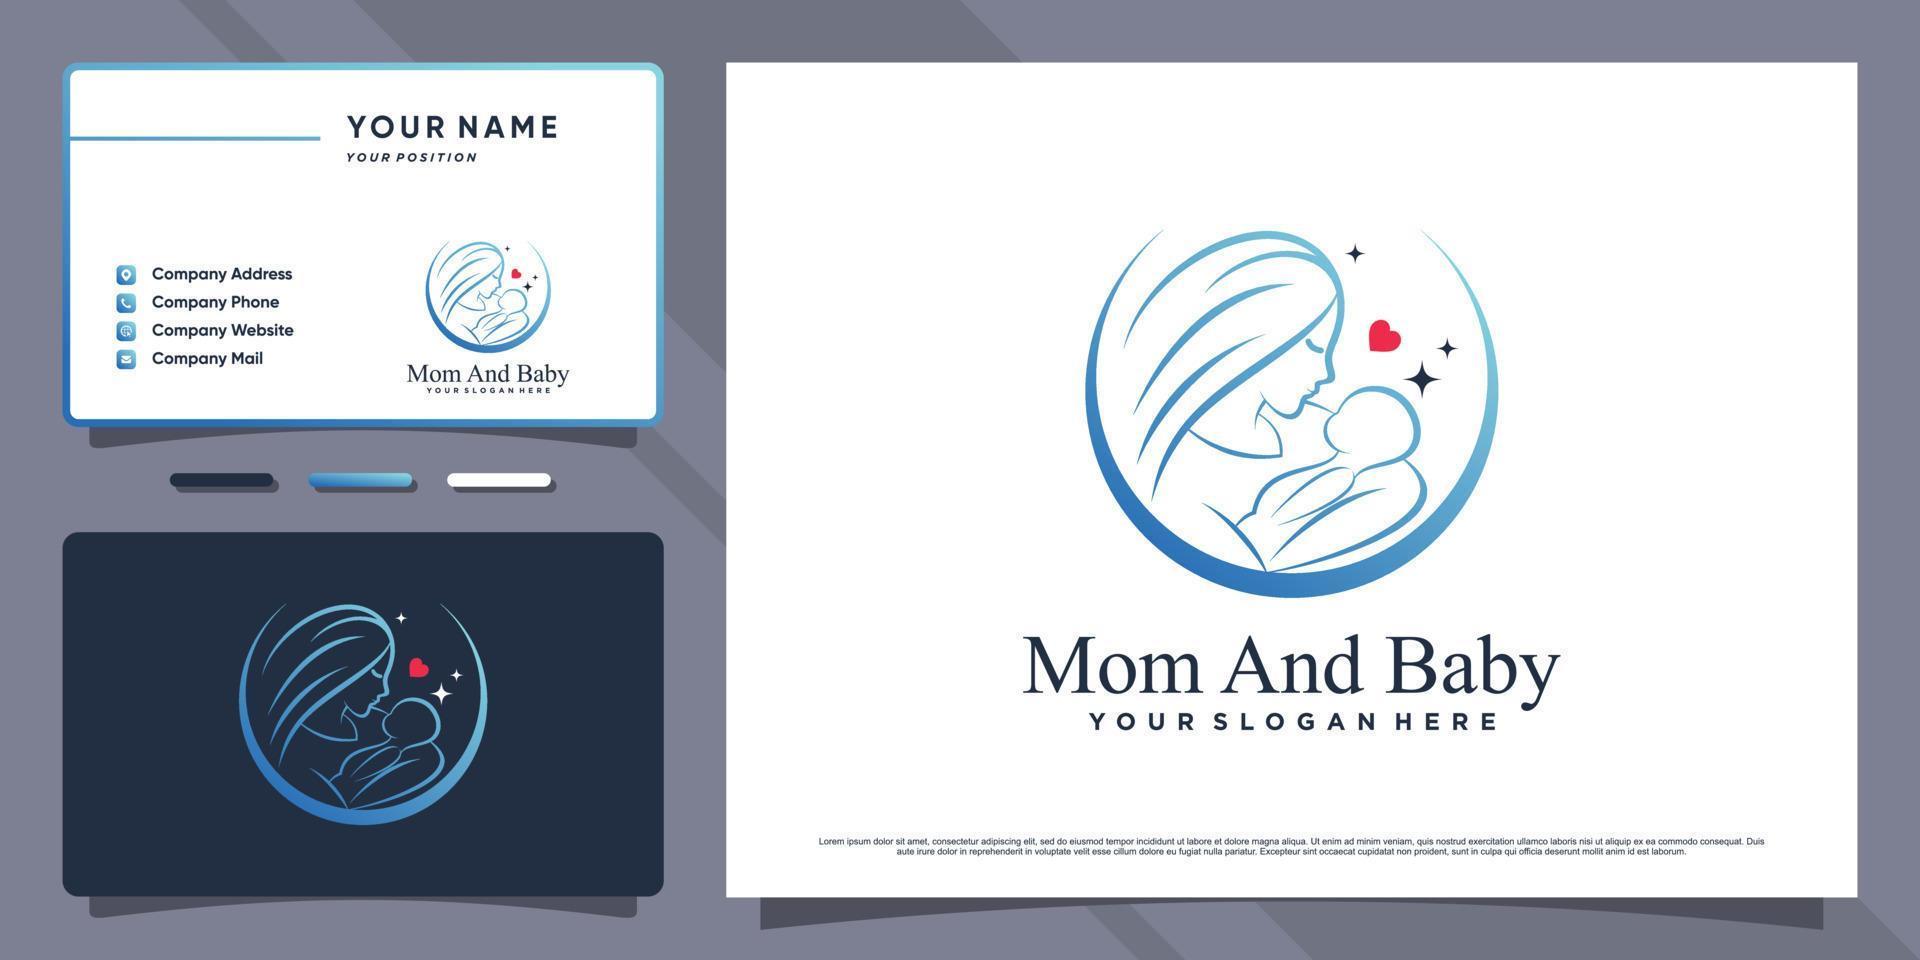 logotipo de mãe e bebê com elemento criativo e vetor premium de design de cartão de visita